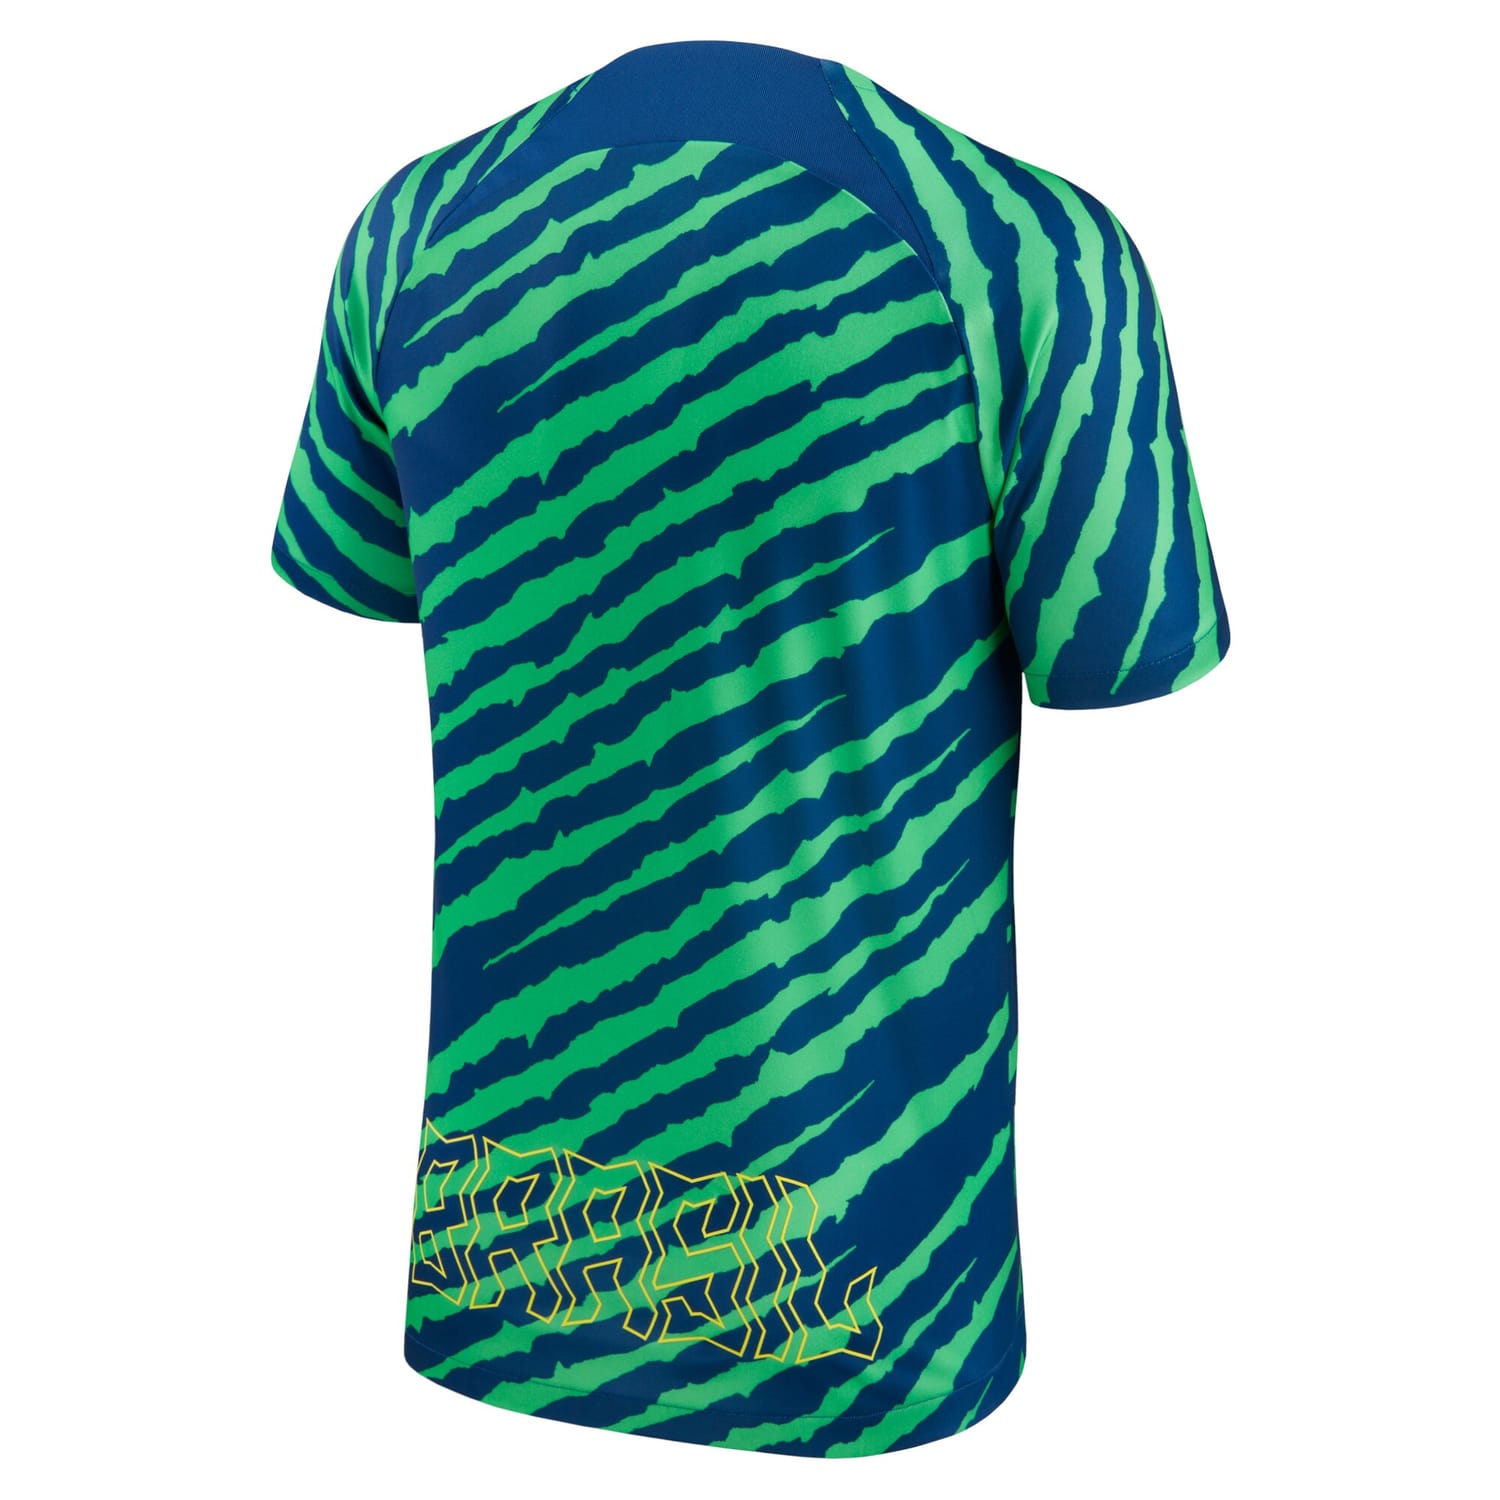 Brazil National Team Pre-Match Jersey Shirt Blue/Green 2022-23 for Men